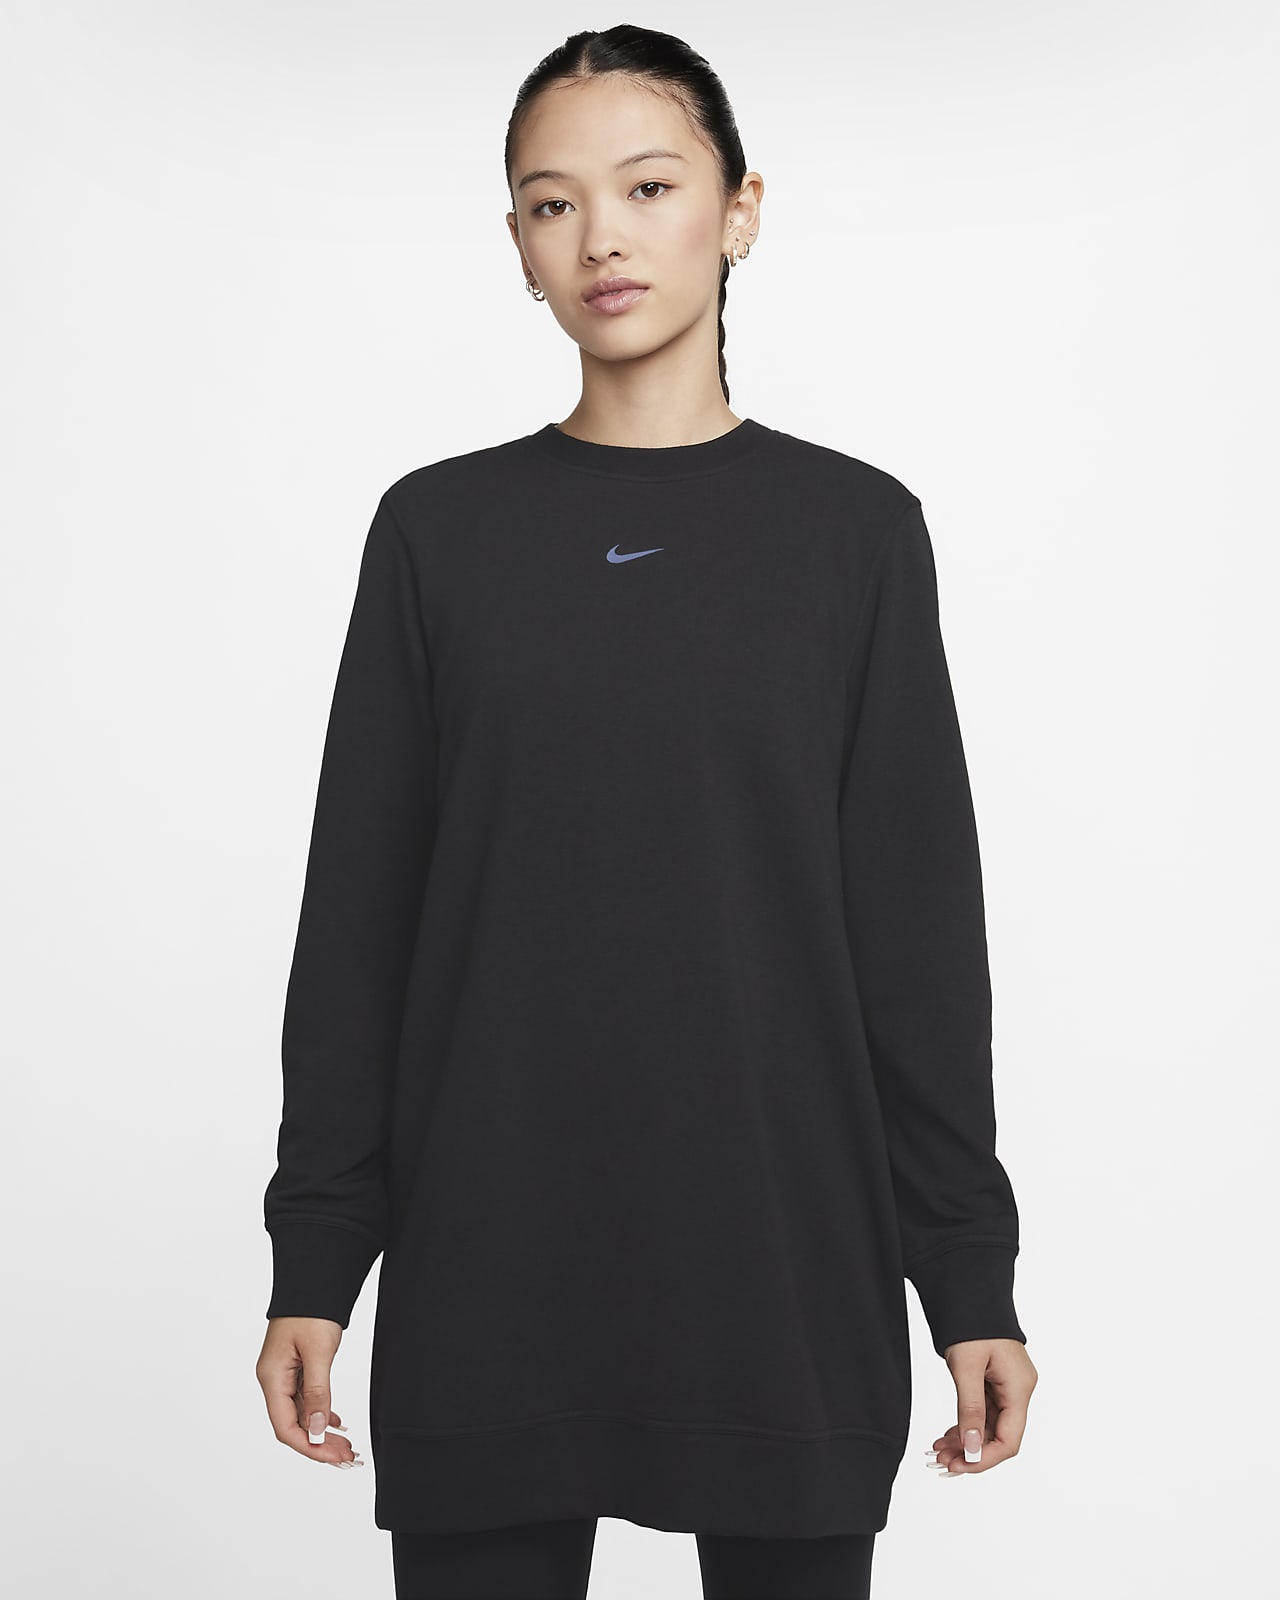 Nike Dri-FIT One 女款圓領法國毛圈布長衫